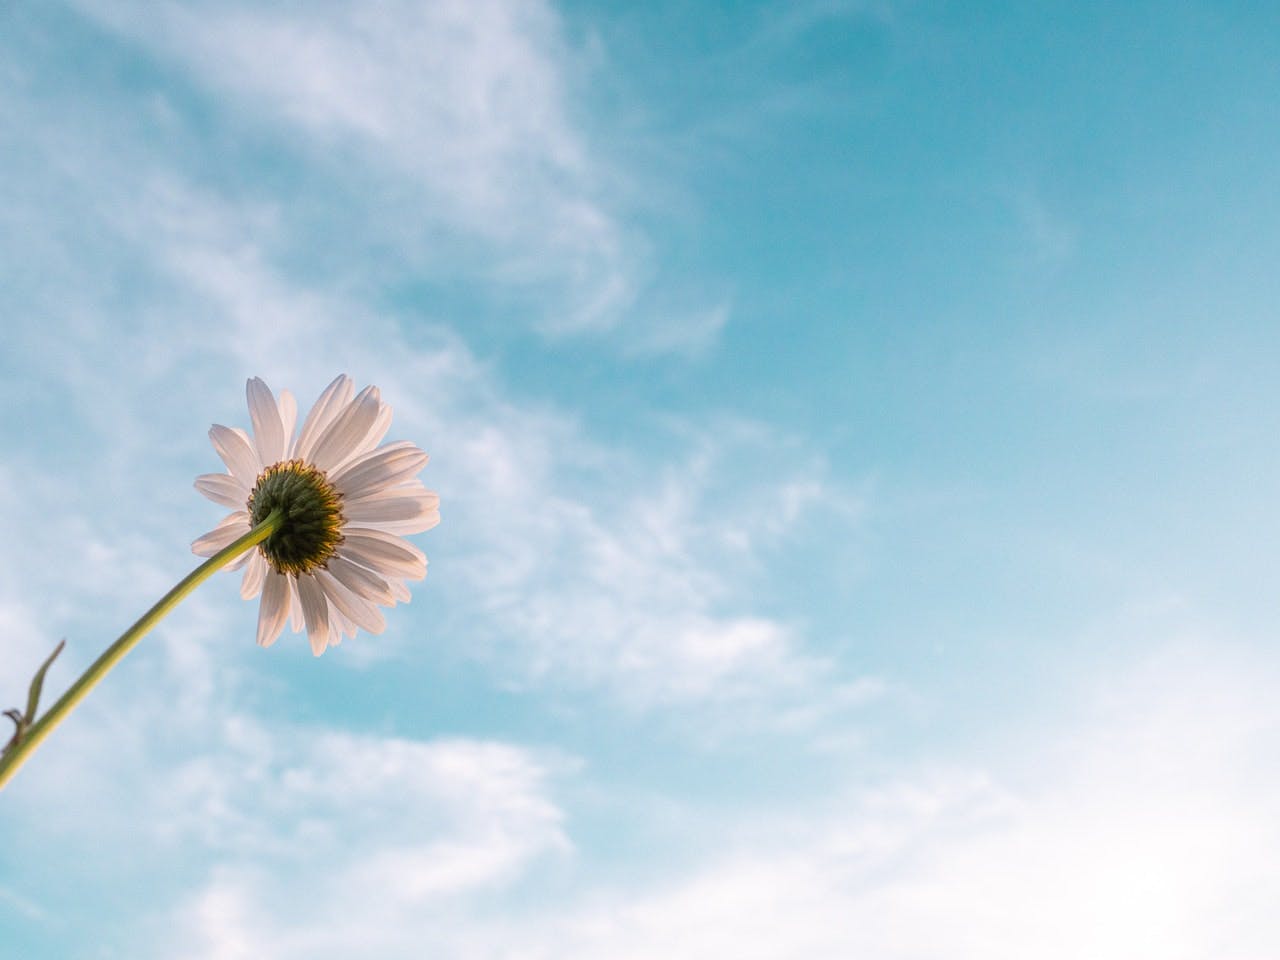 White daisy flower, blue sky